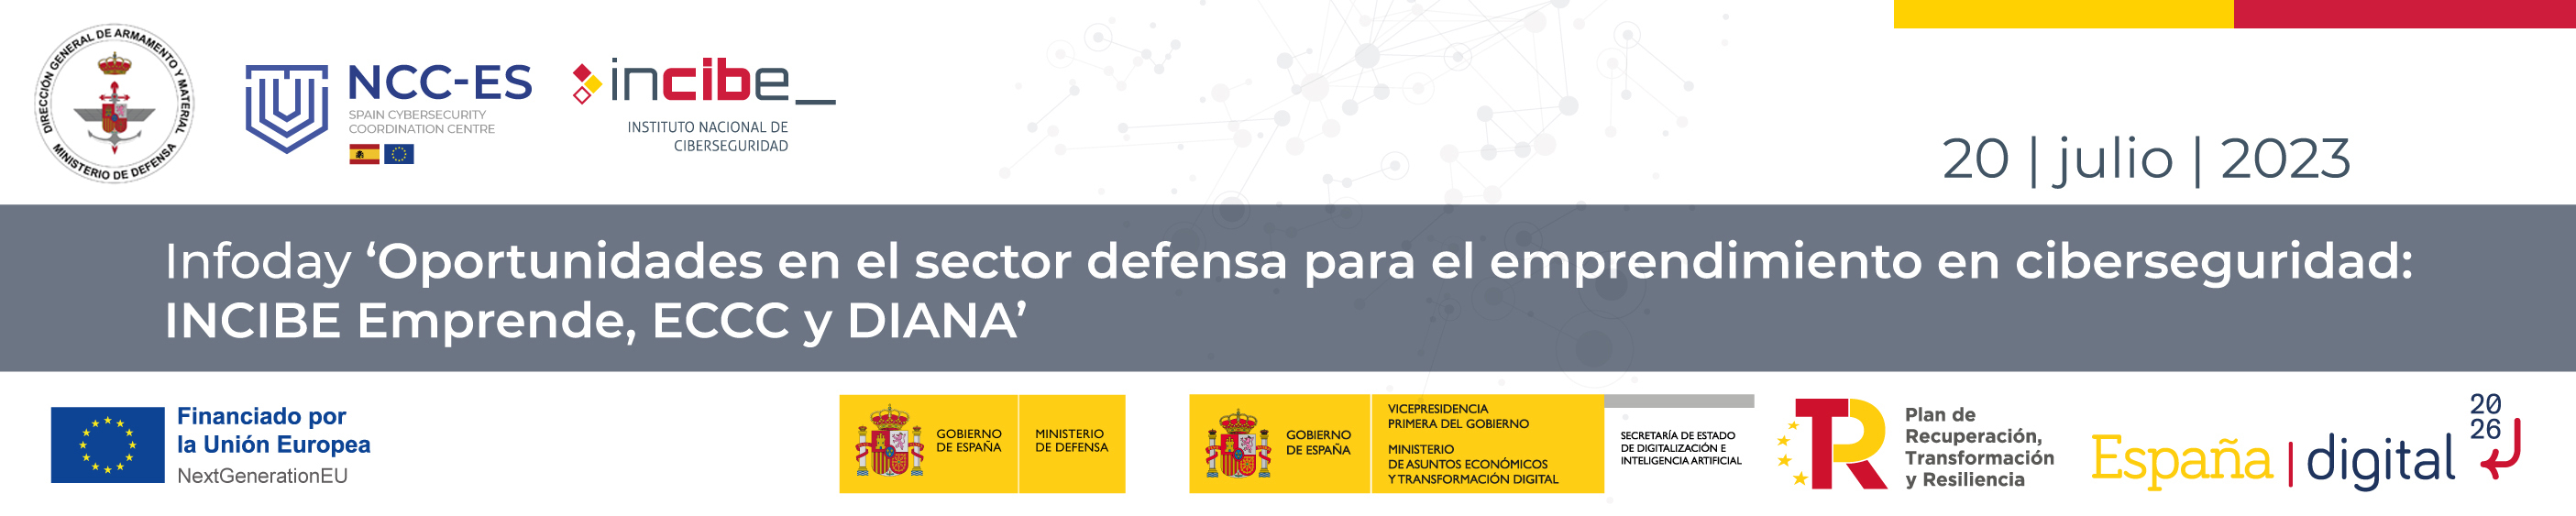 Oportunidades en el sector defensa para emprendimiento en ciberseguridad: INCIBE Emprende, ECCC y DIANA